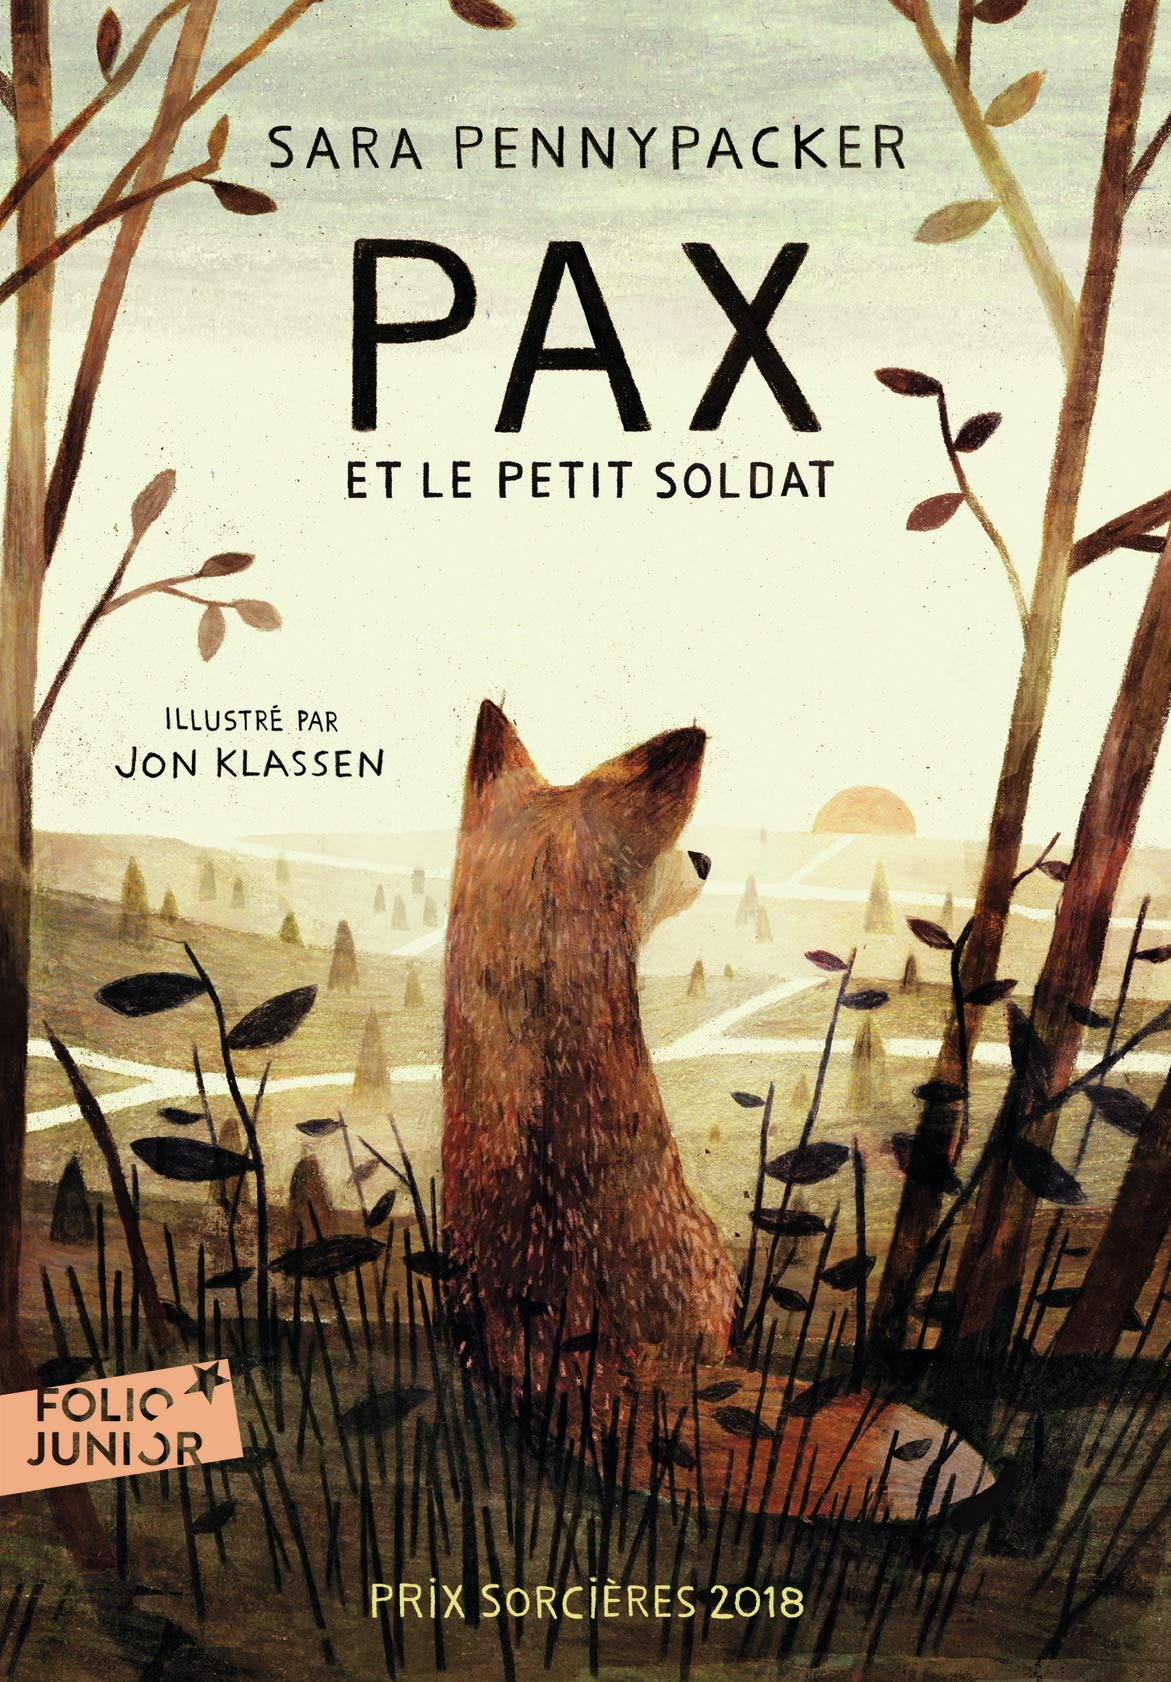 Pax et le petit soldat | Sara Pennypacker